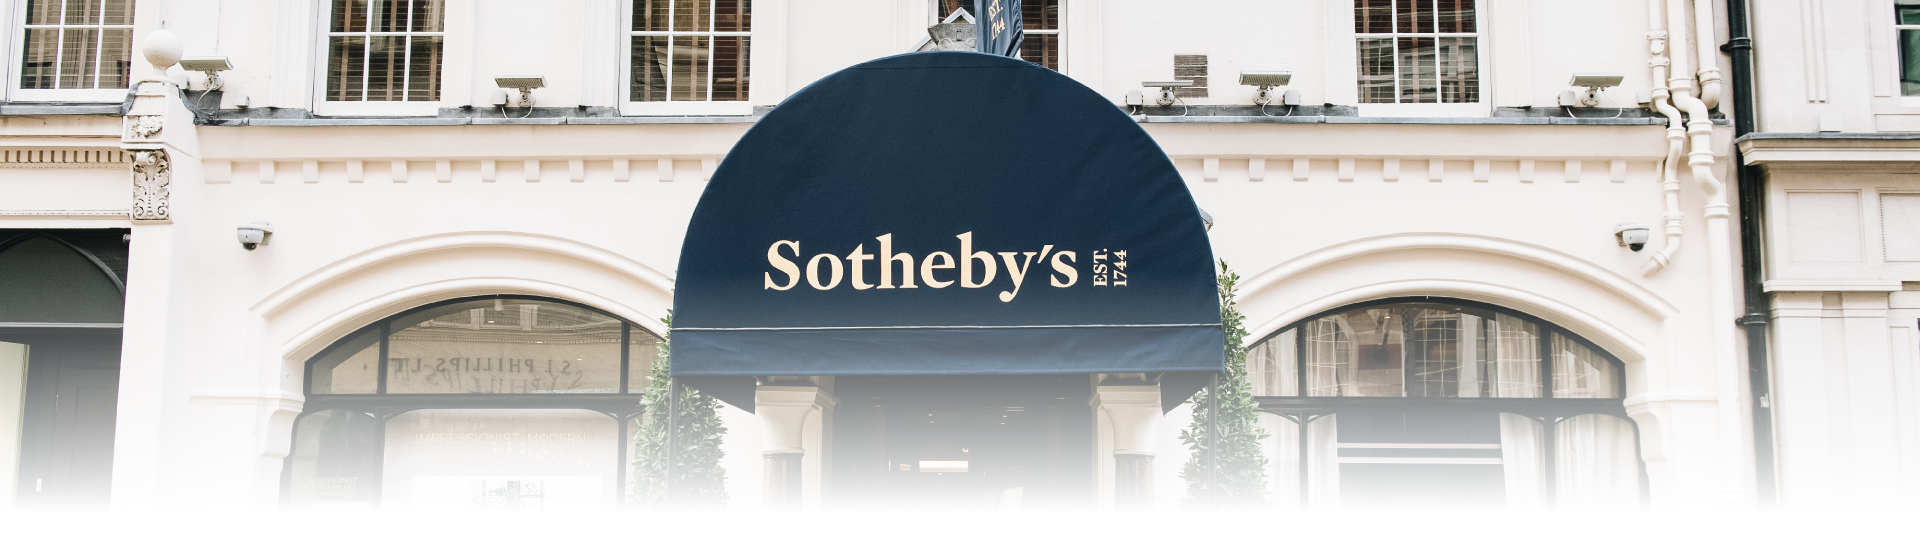 Sothebys-2